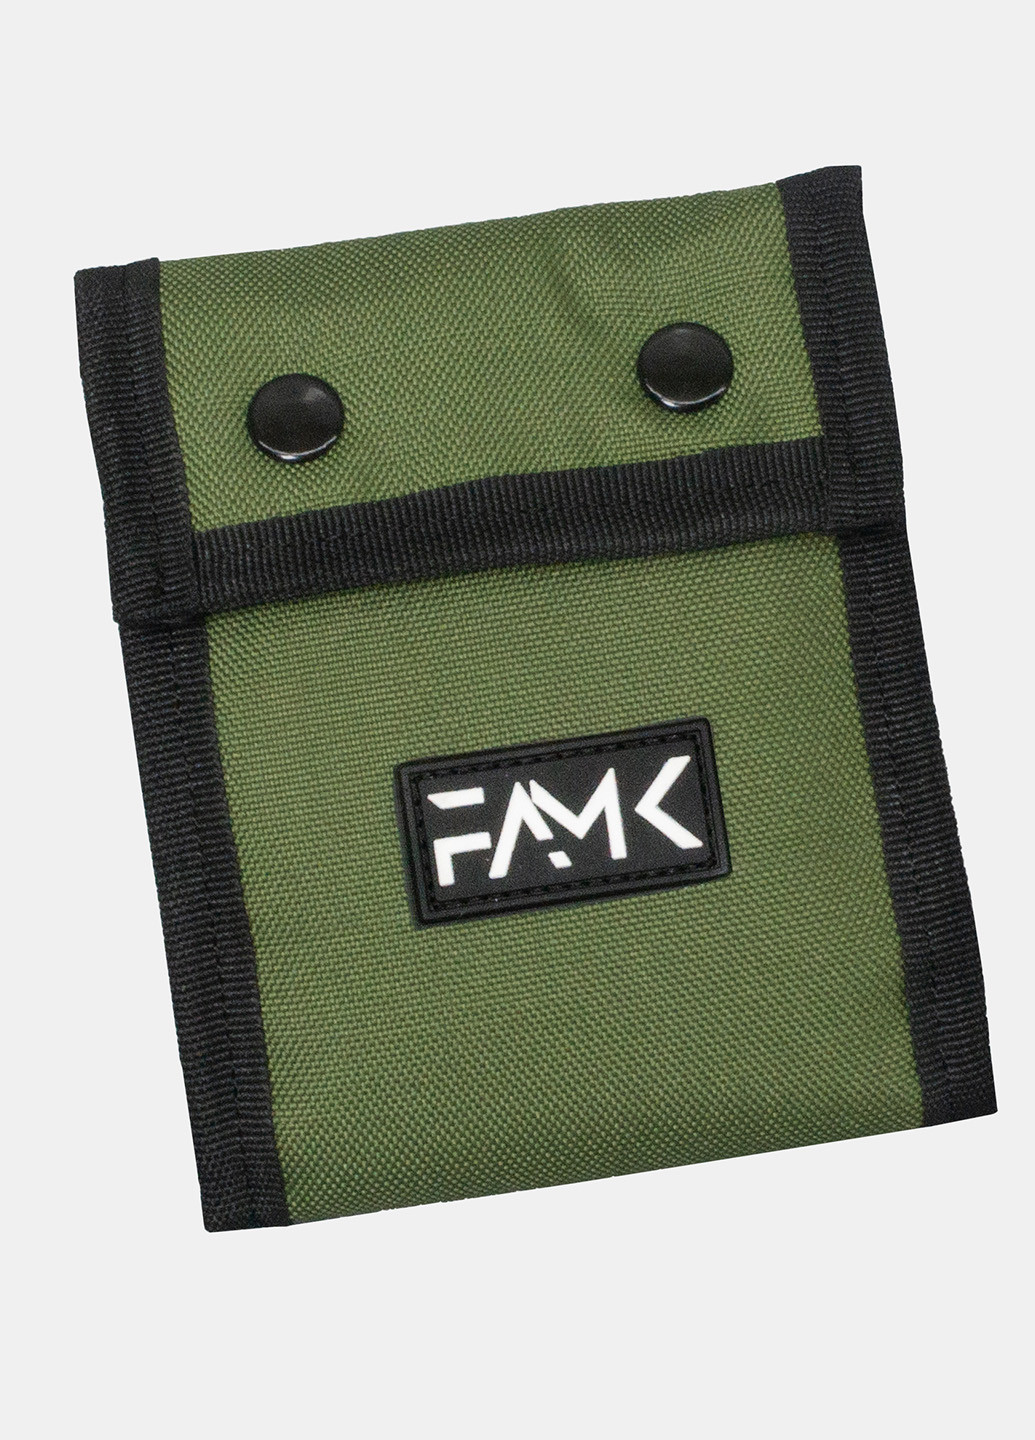 Гаманець на кнопках Tri-fold хакі Famk (254661182)